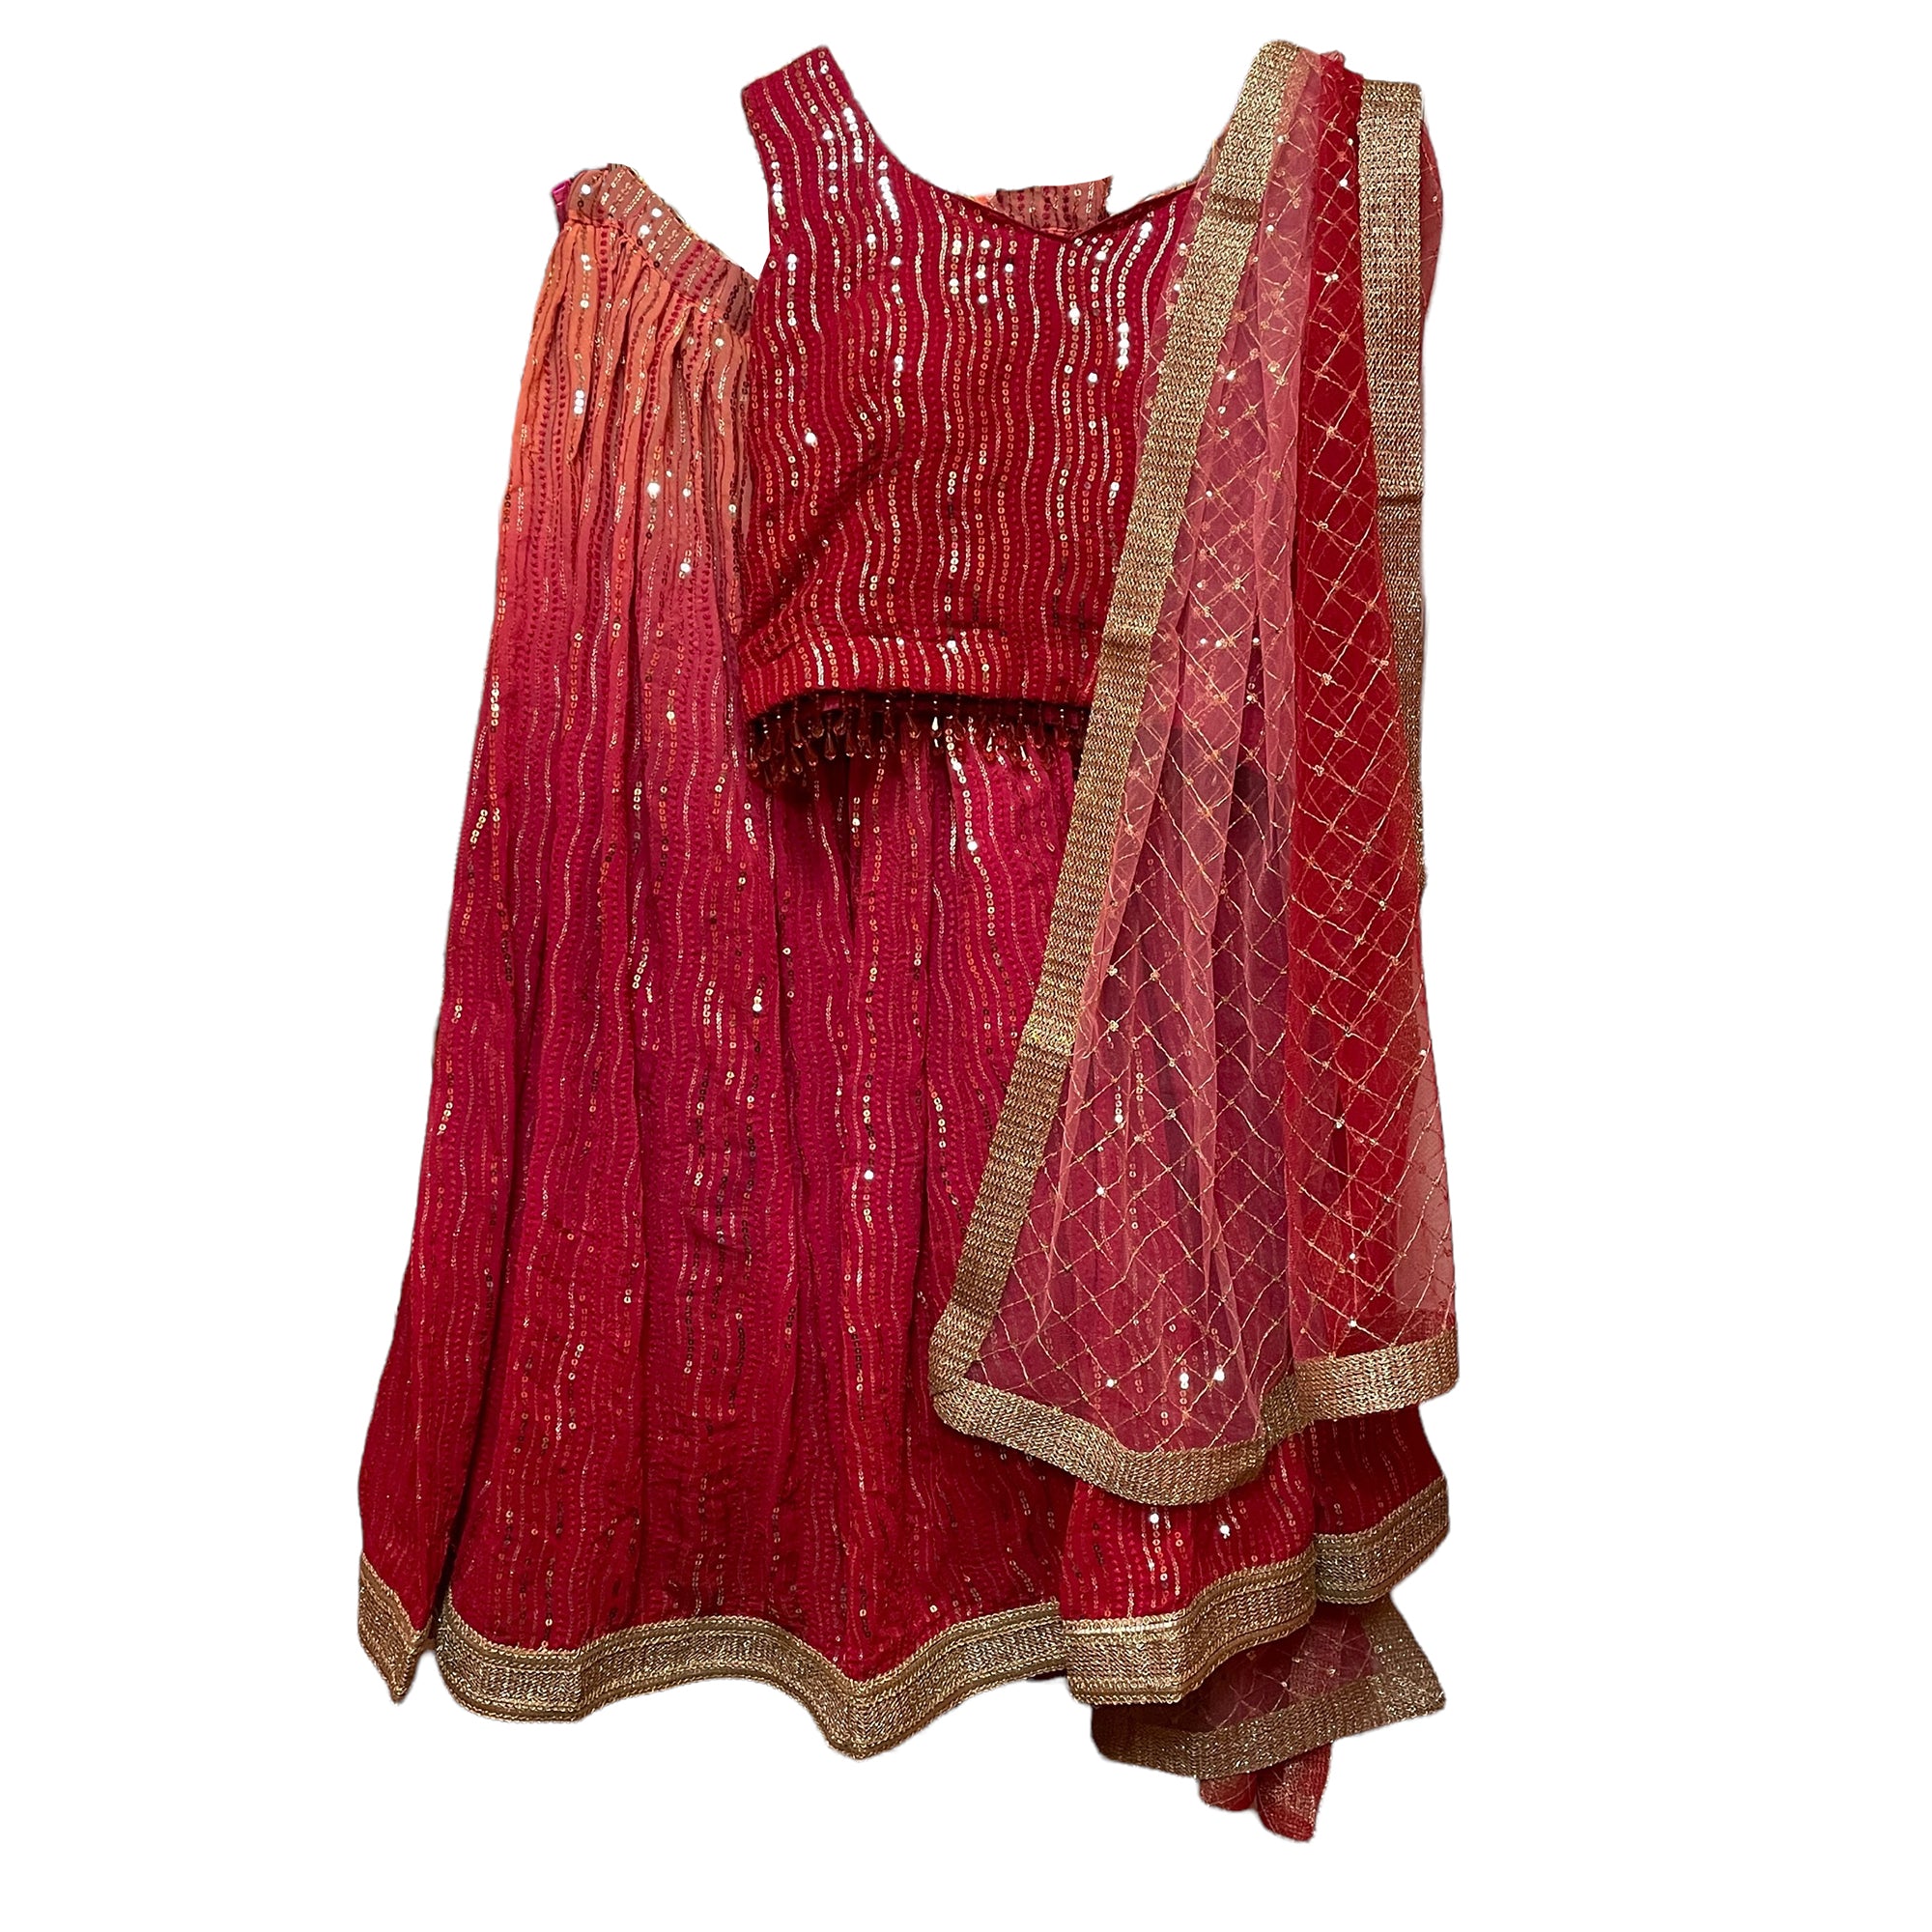 DT Plus Size Sequin Lehenga Sets-2Colors - Vintage India NYC